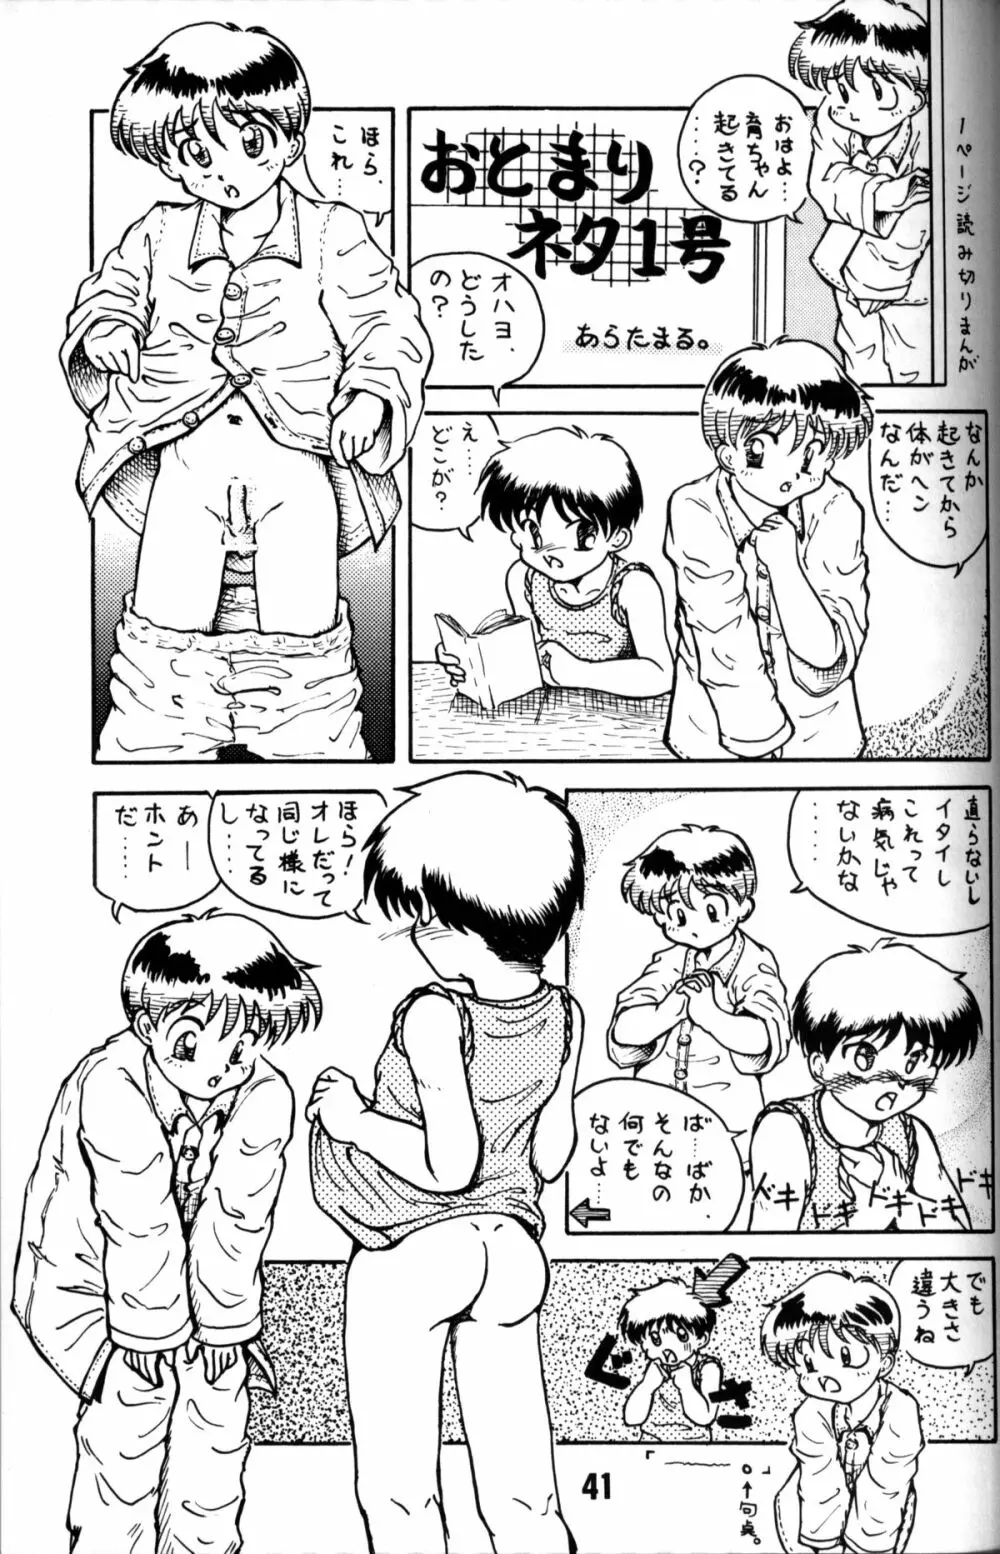 Anthology - Nekketsu Project - Volume 1 'Shounen Banana Milk' Page.40